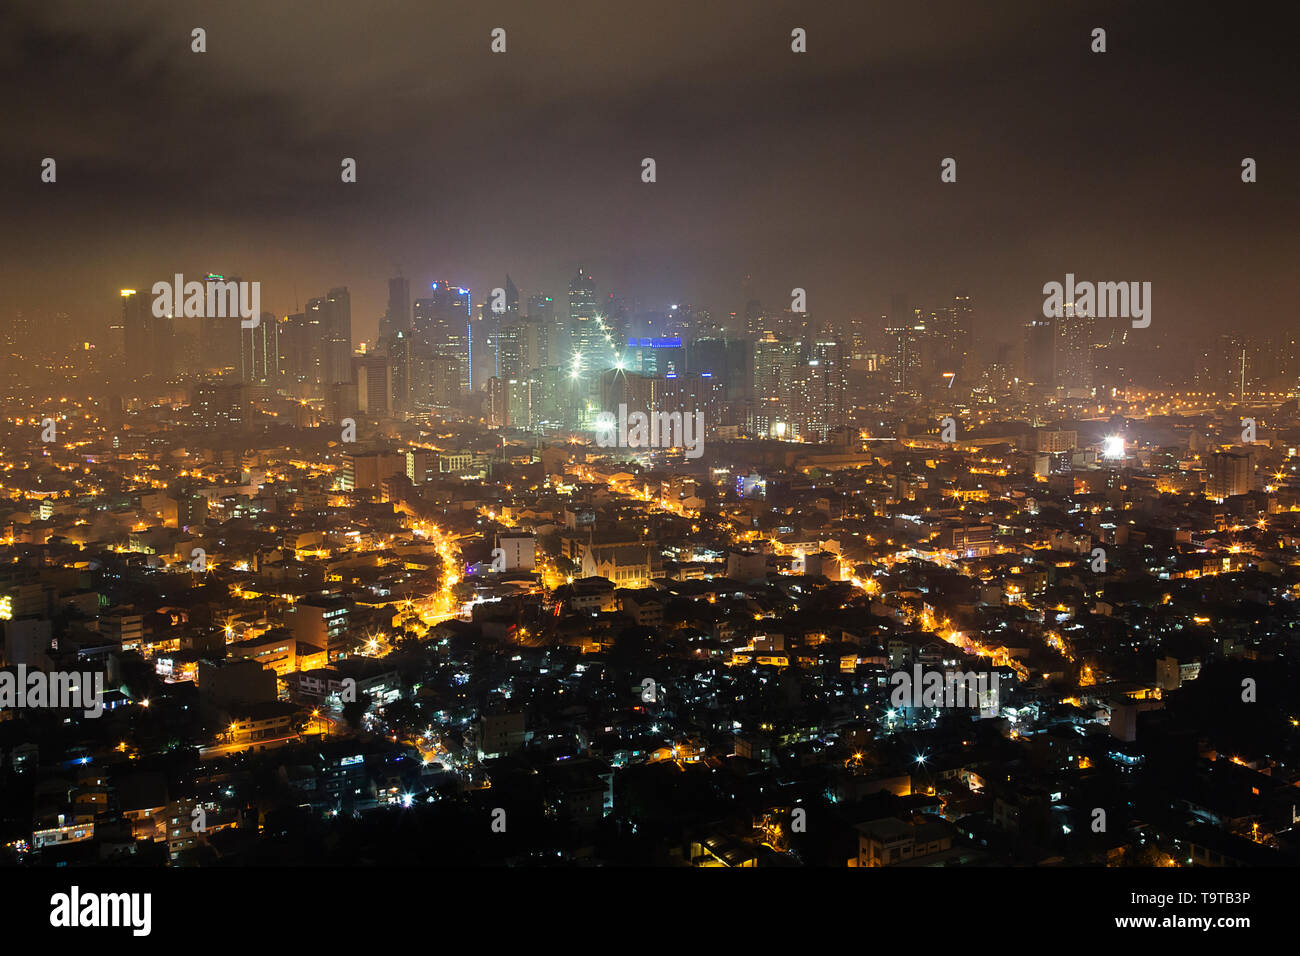 Night view of Makati (Metro Manila) from above Stock Photo